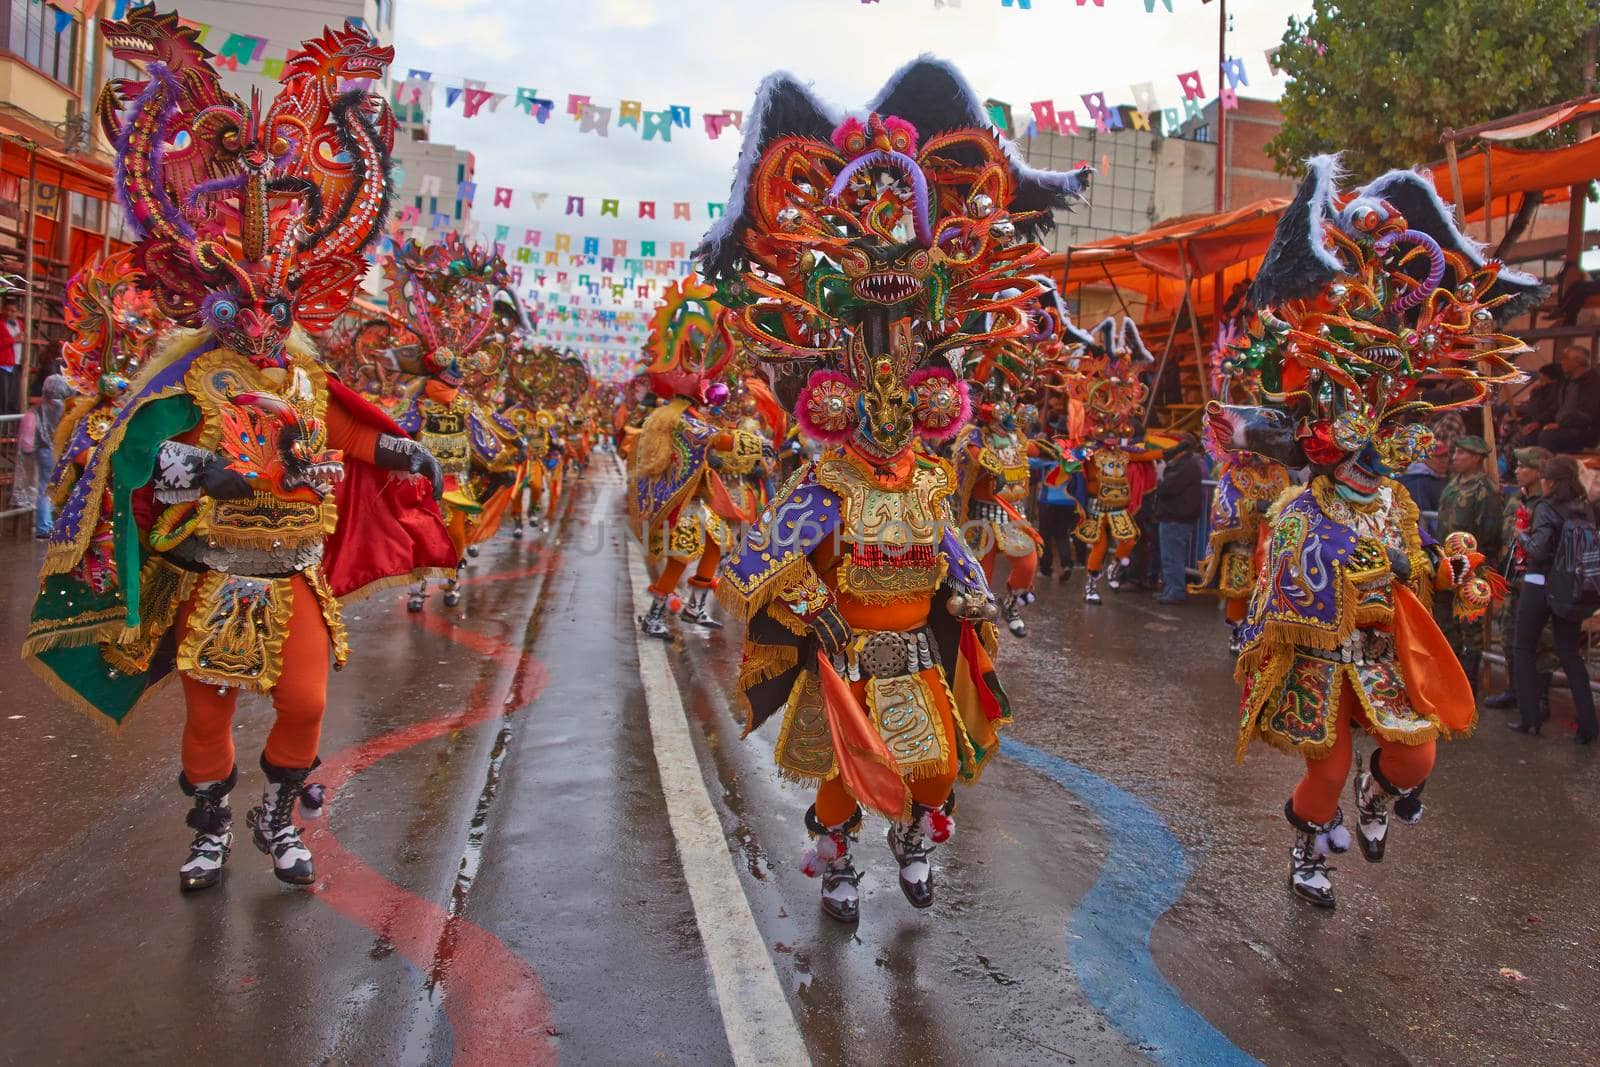 Oruro Carnival by JeremyRichards